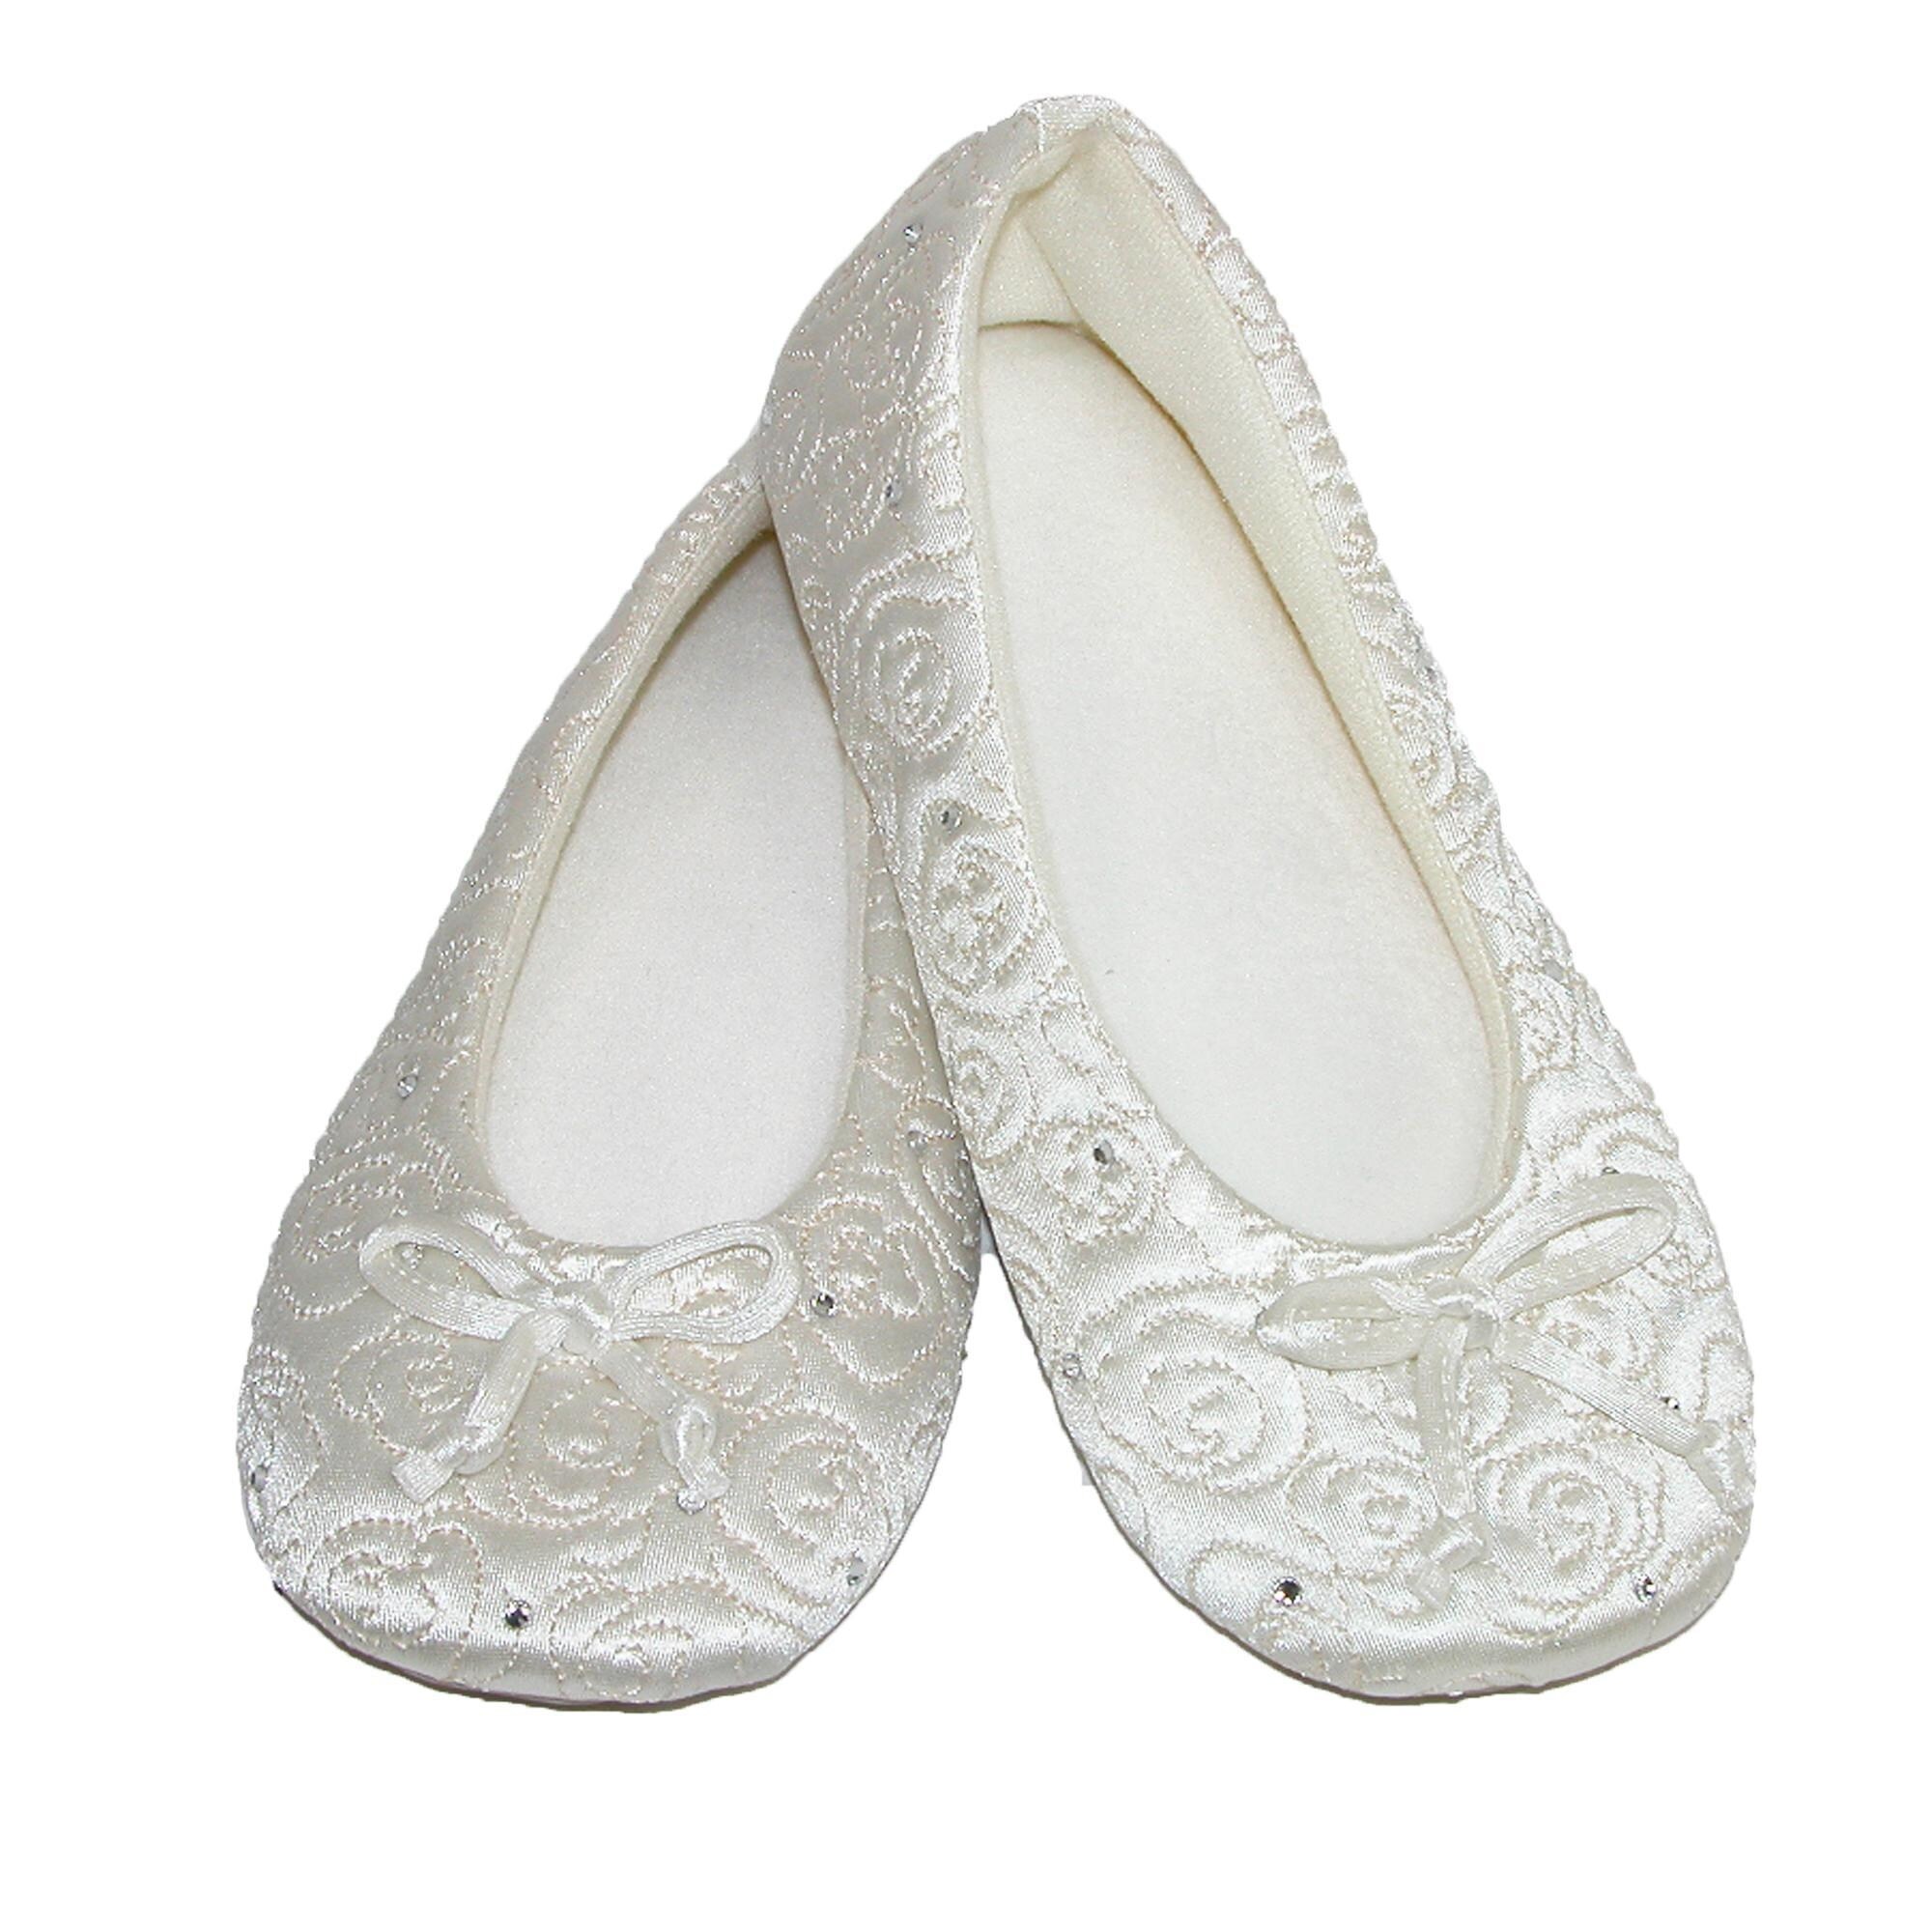 isotoner women's terry ballerina slipper